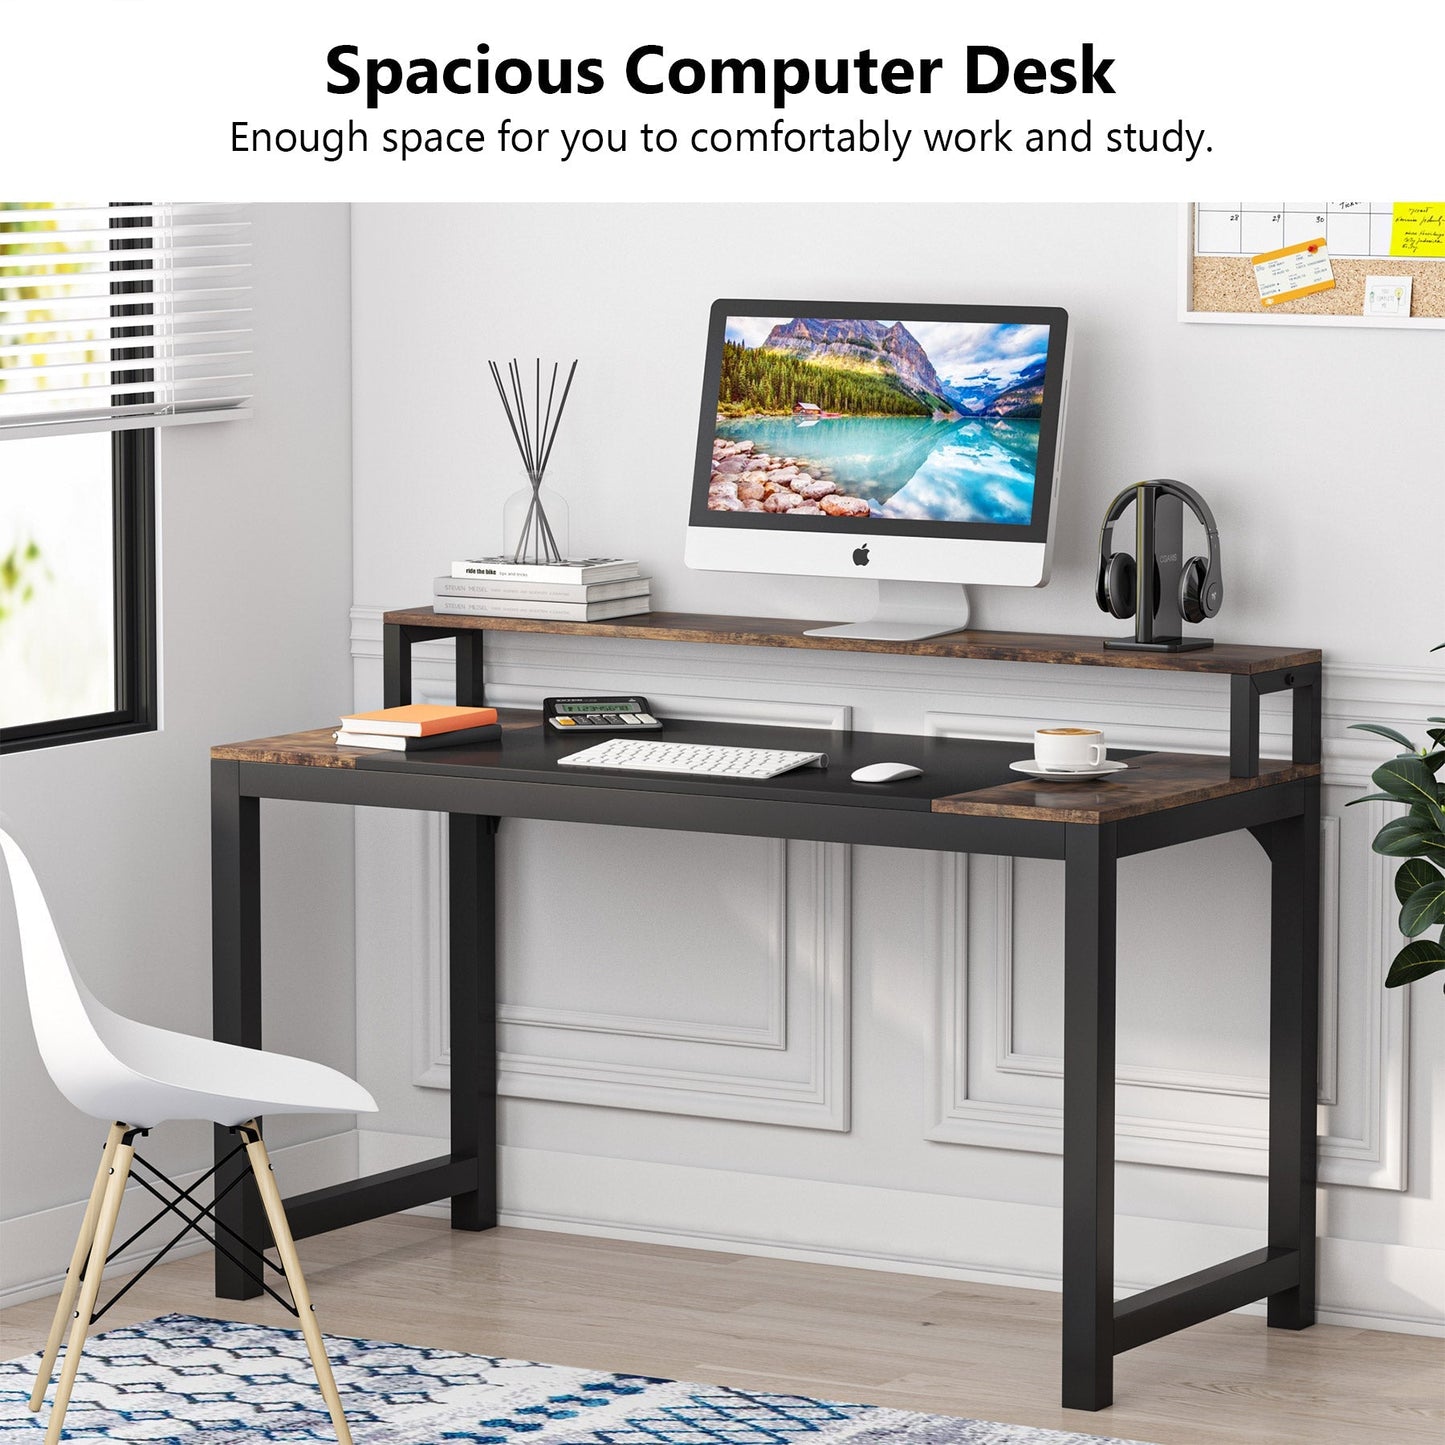 Tribesigns - Mesa para ordenador con soporte para monitor, escritorio pequeño con estante para monitor, mesa de oficina, mesa para PC